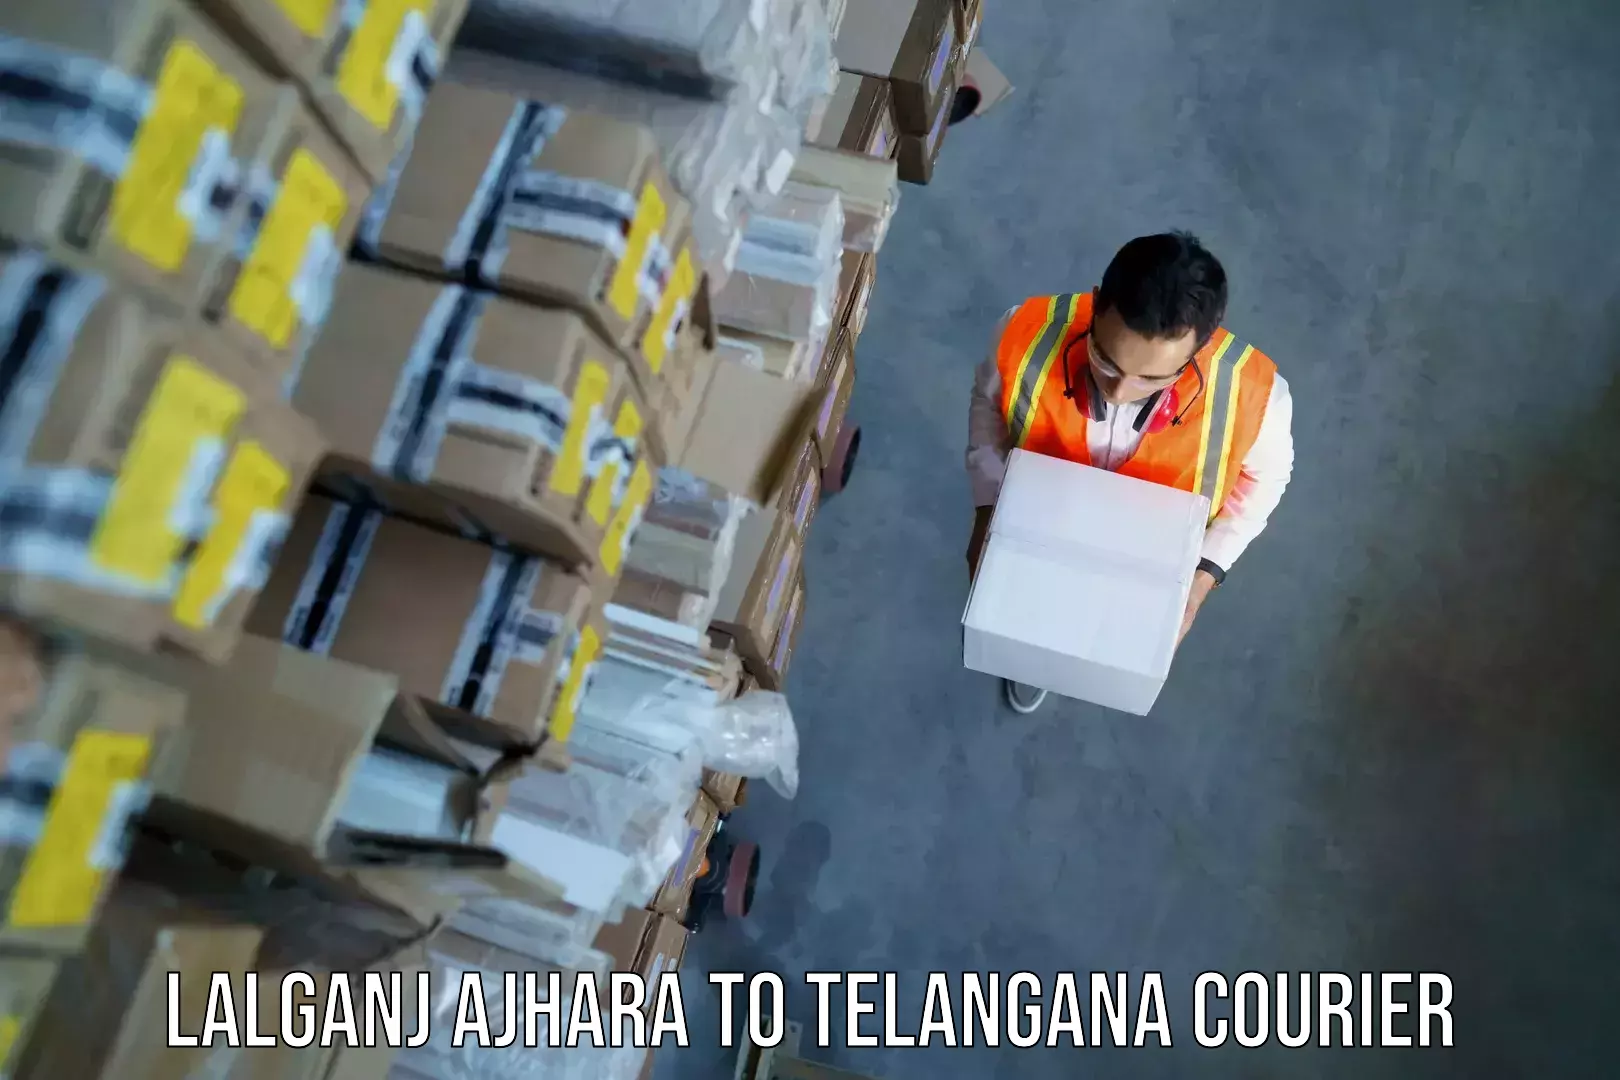 Baggage shipping service Lalganj Ajhara to Telangana